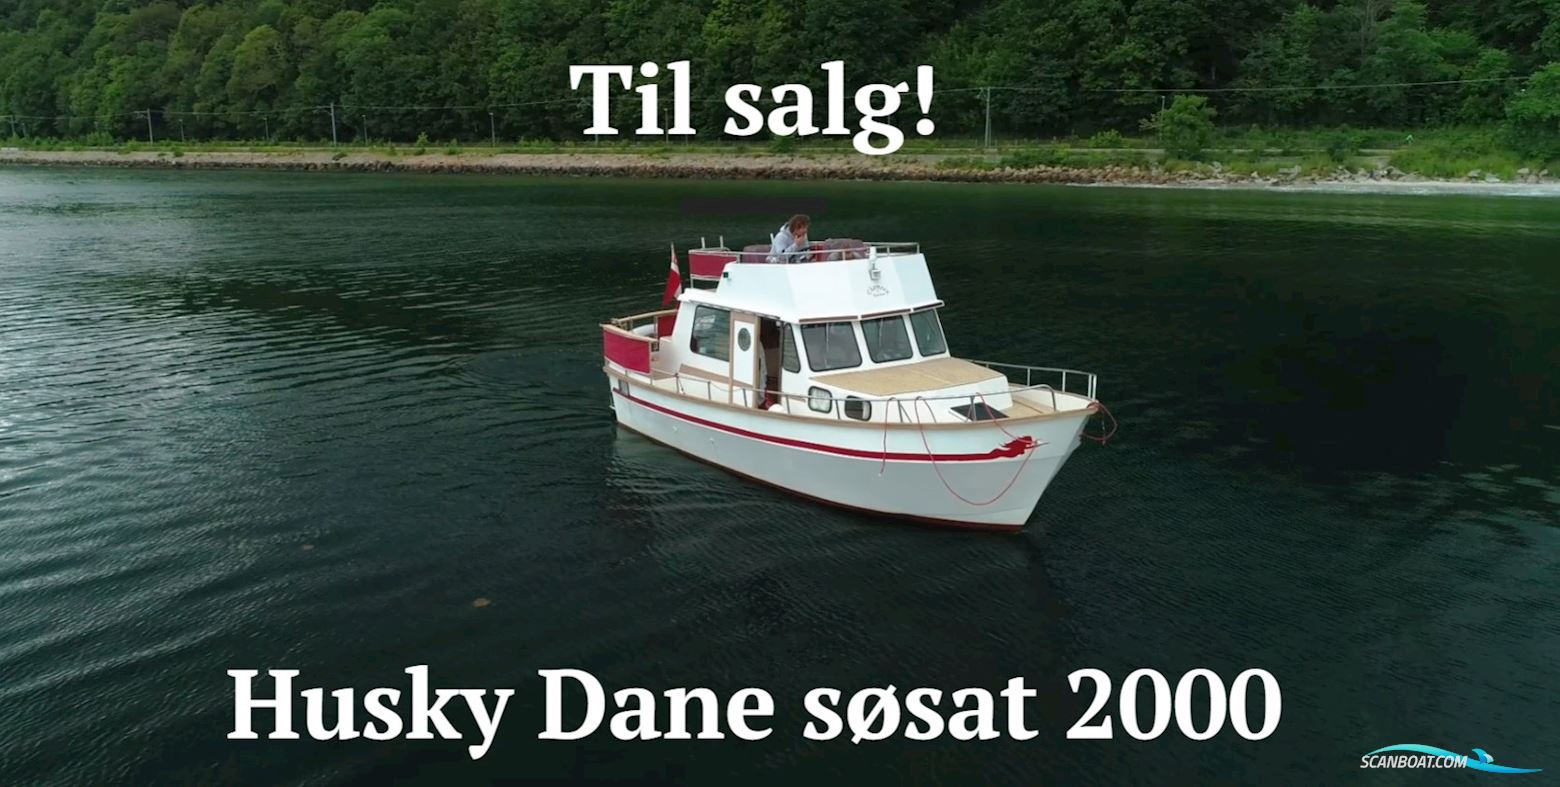 Husky Dane 85 Motorbåt 1998, med Iveco motor, Danmark